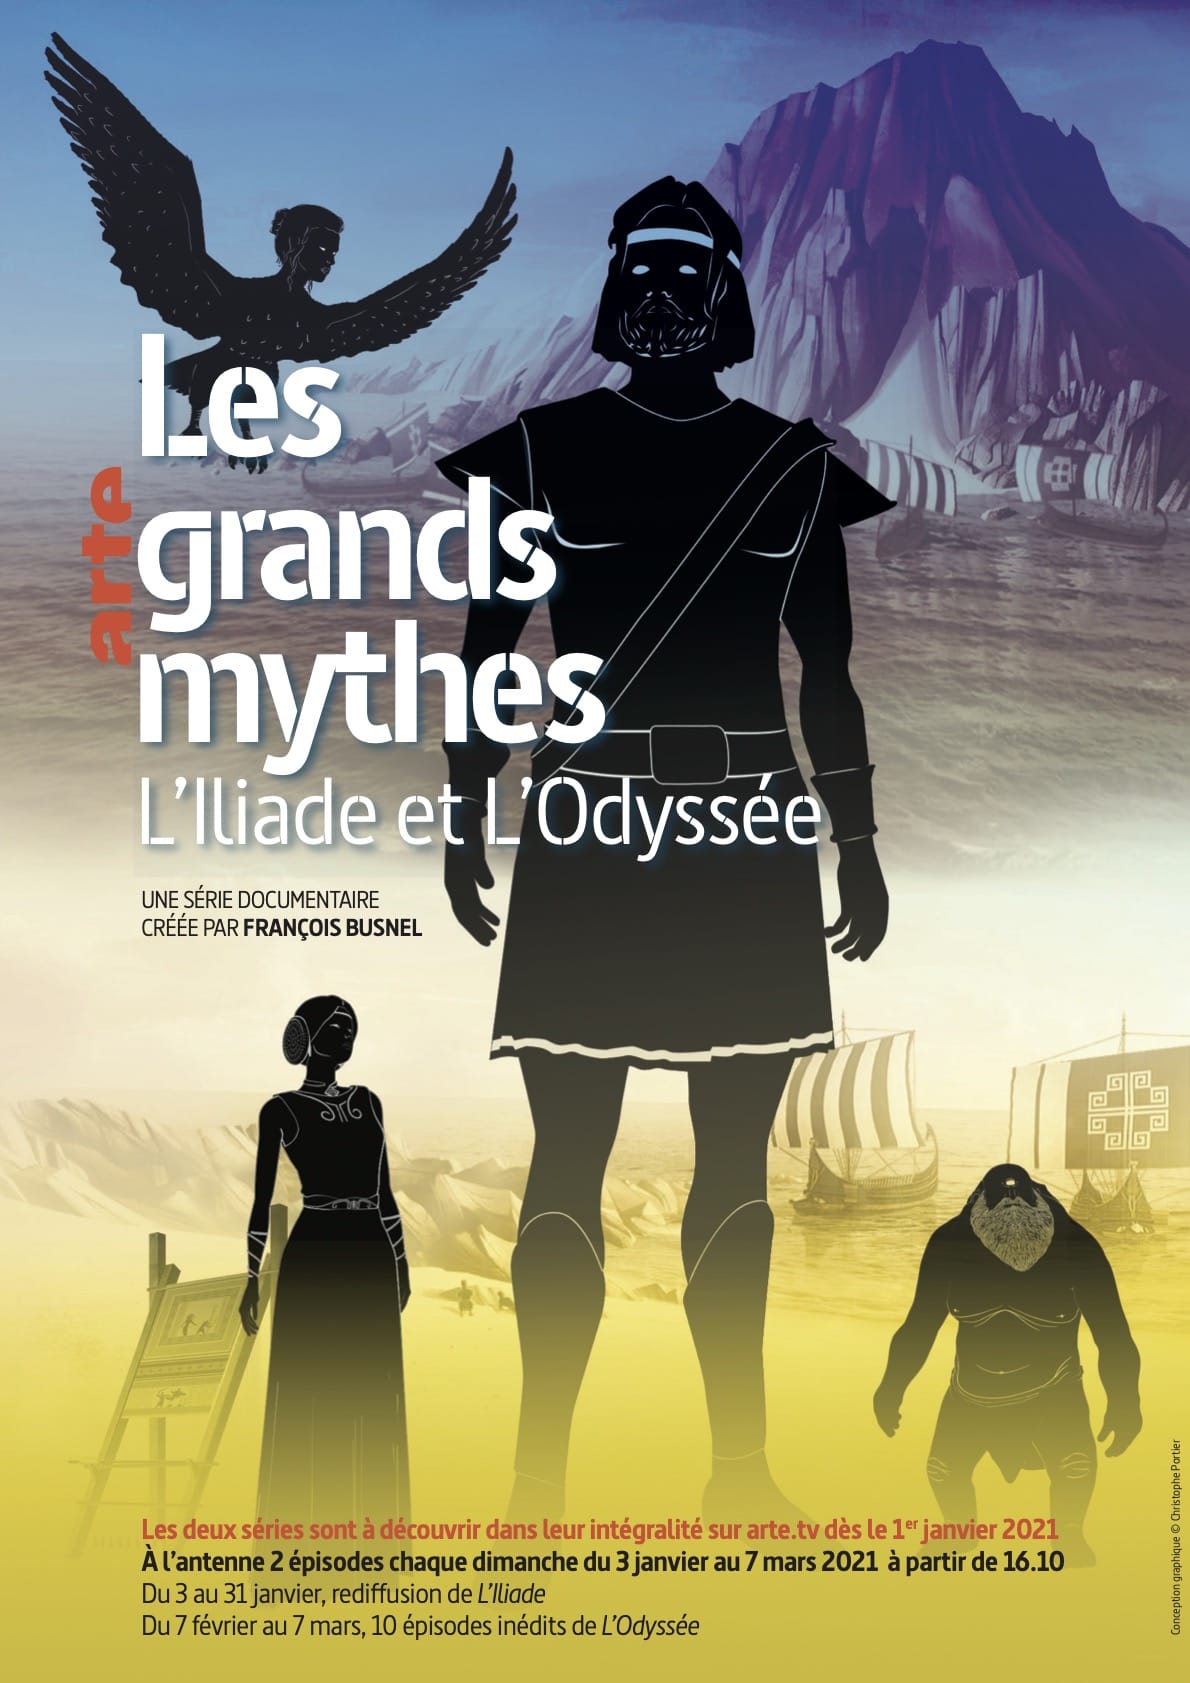 Les grands mythes - L’Iliade et L’Odyssée affiche série documentaire